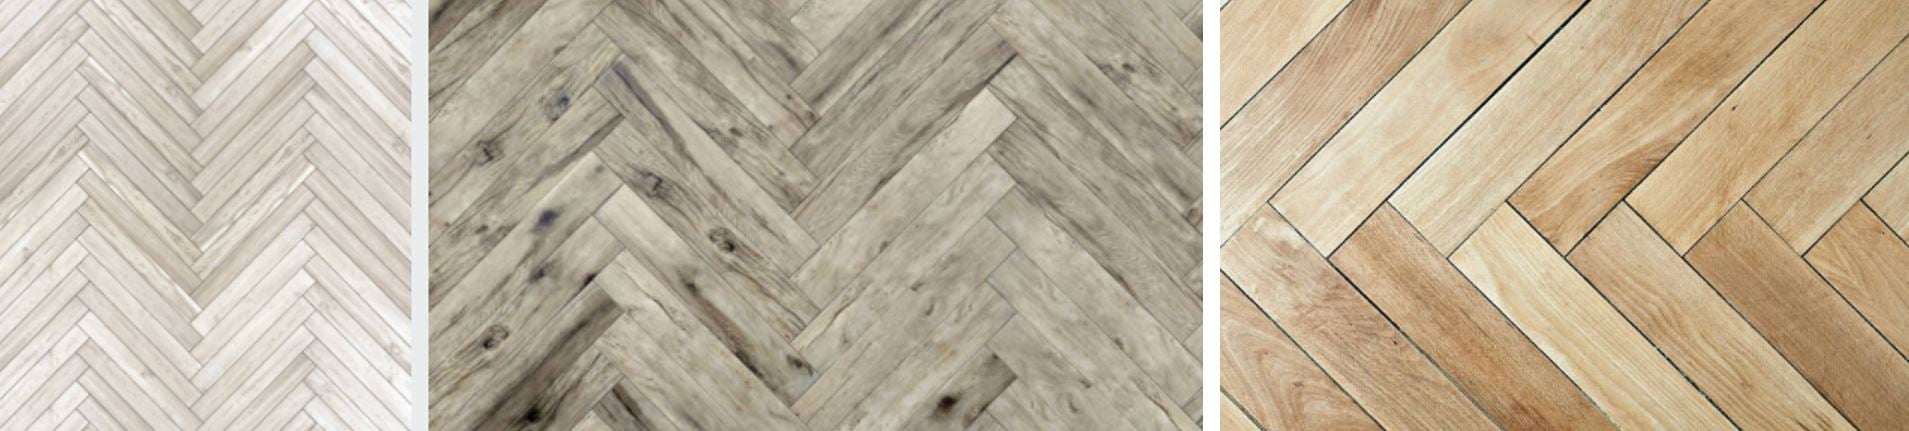 hallharthomes-herringbone-patterned-flooring